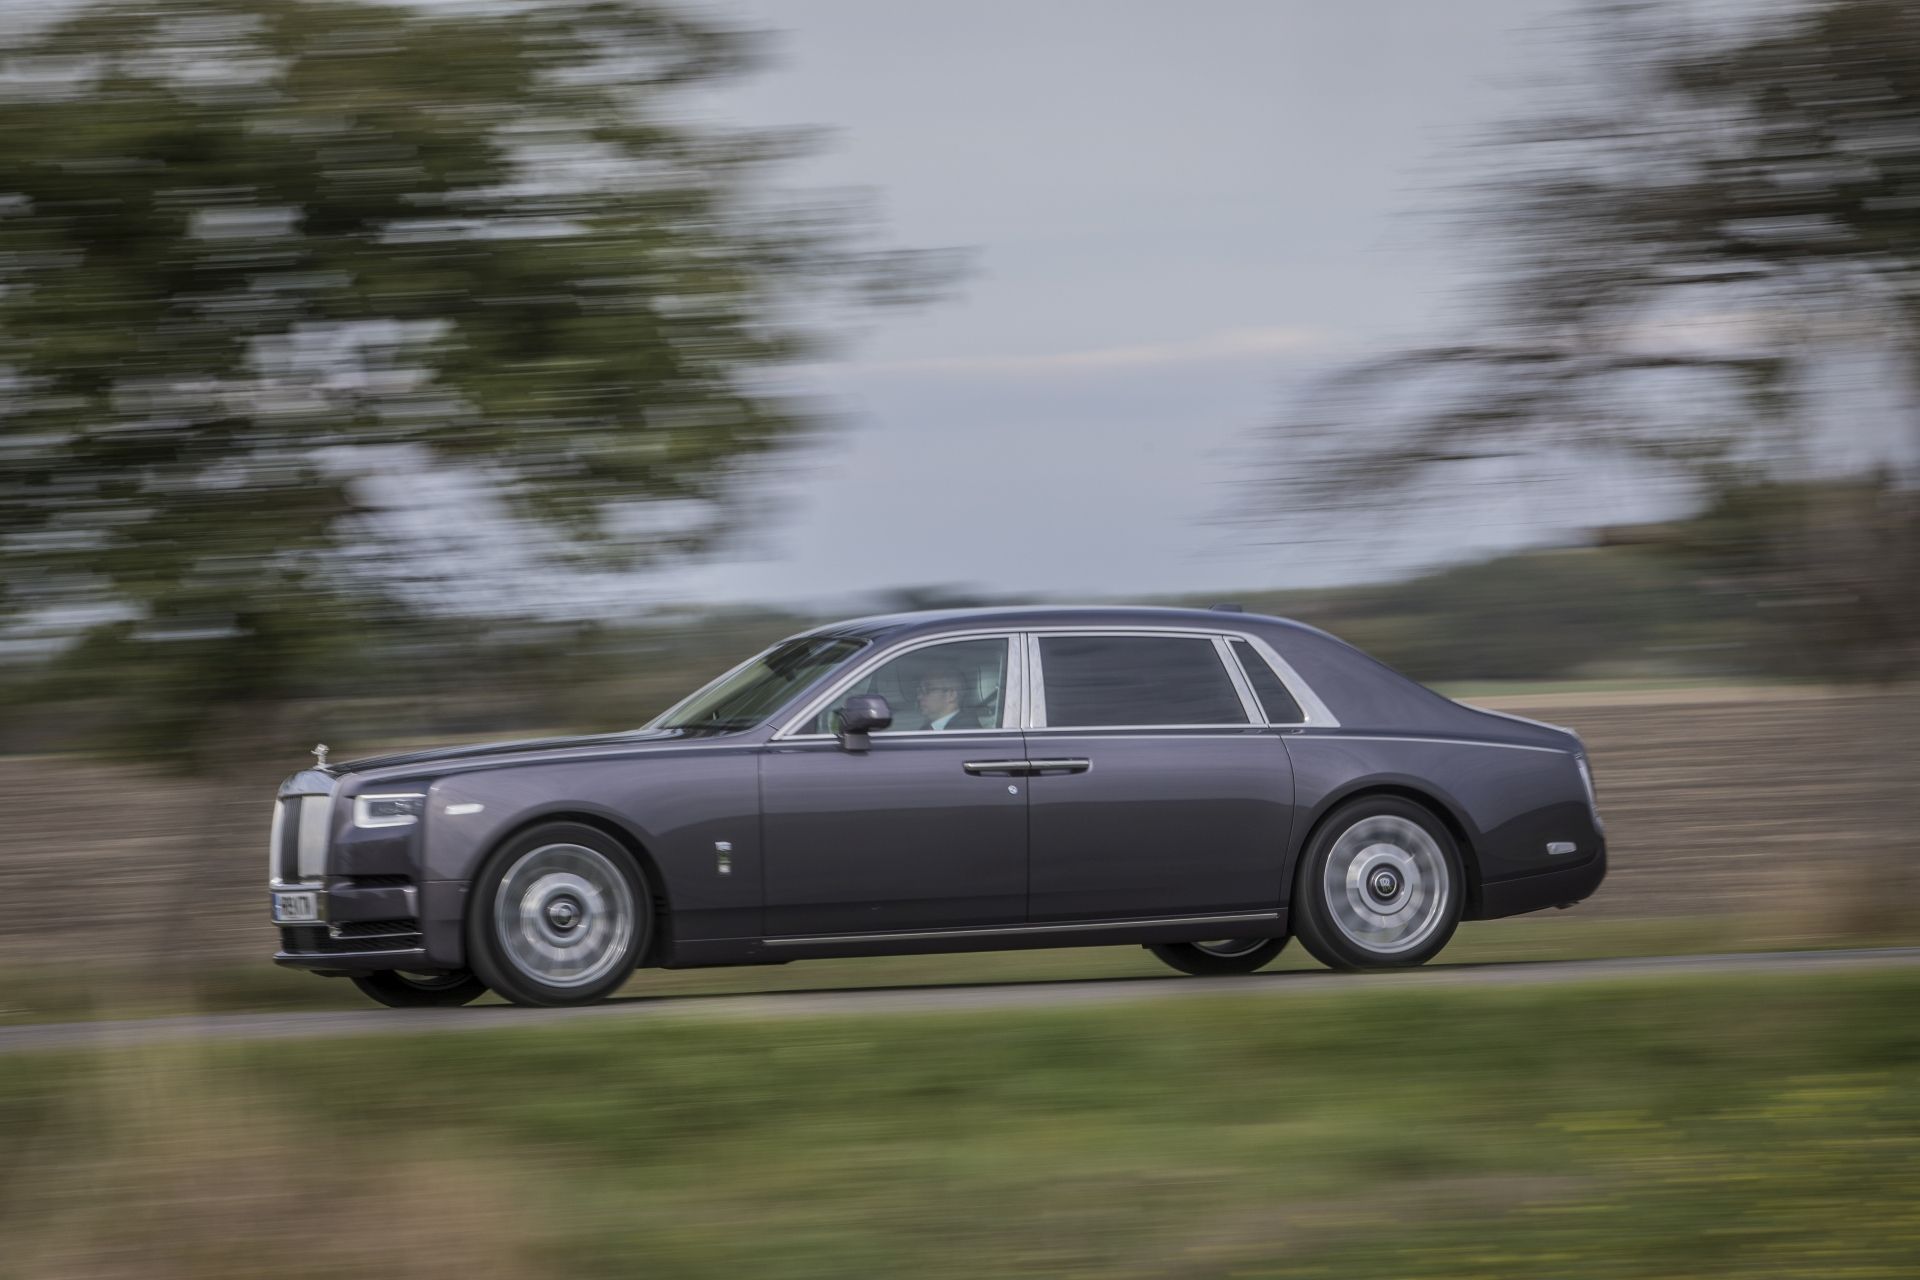 Rolls-Royce Phantom a Cullinan